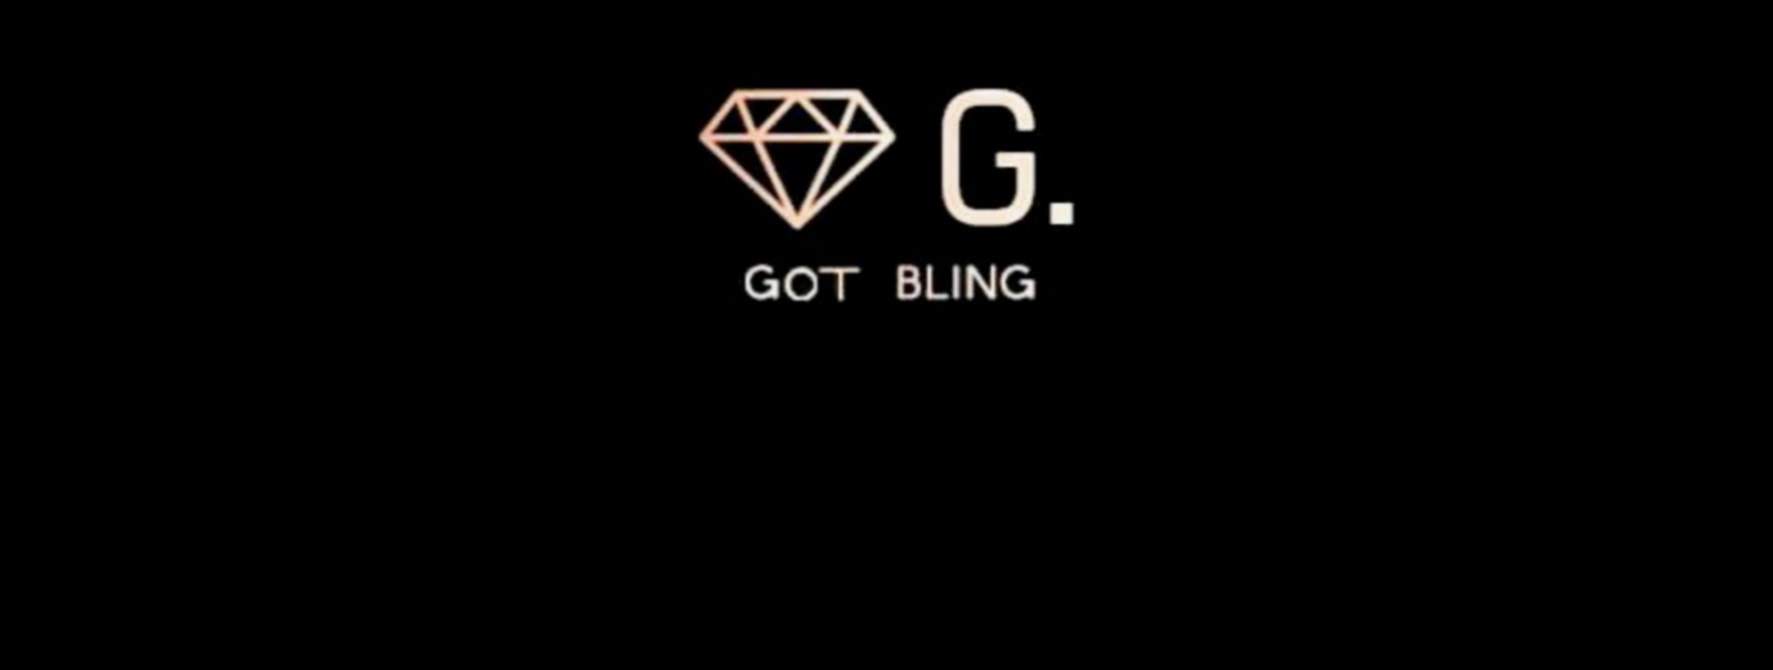 G. Got Bling